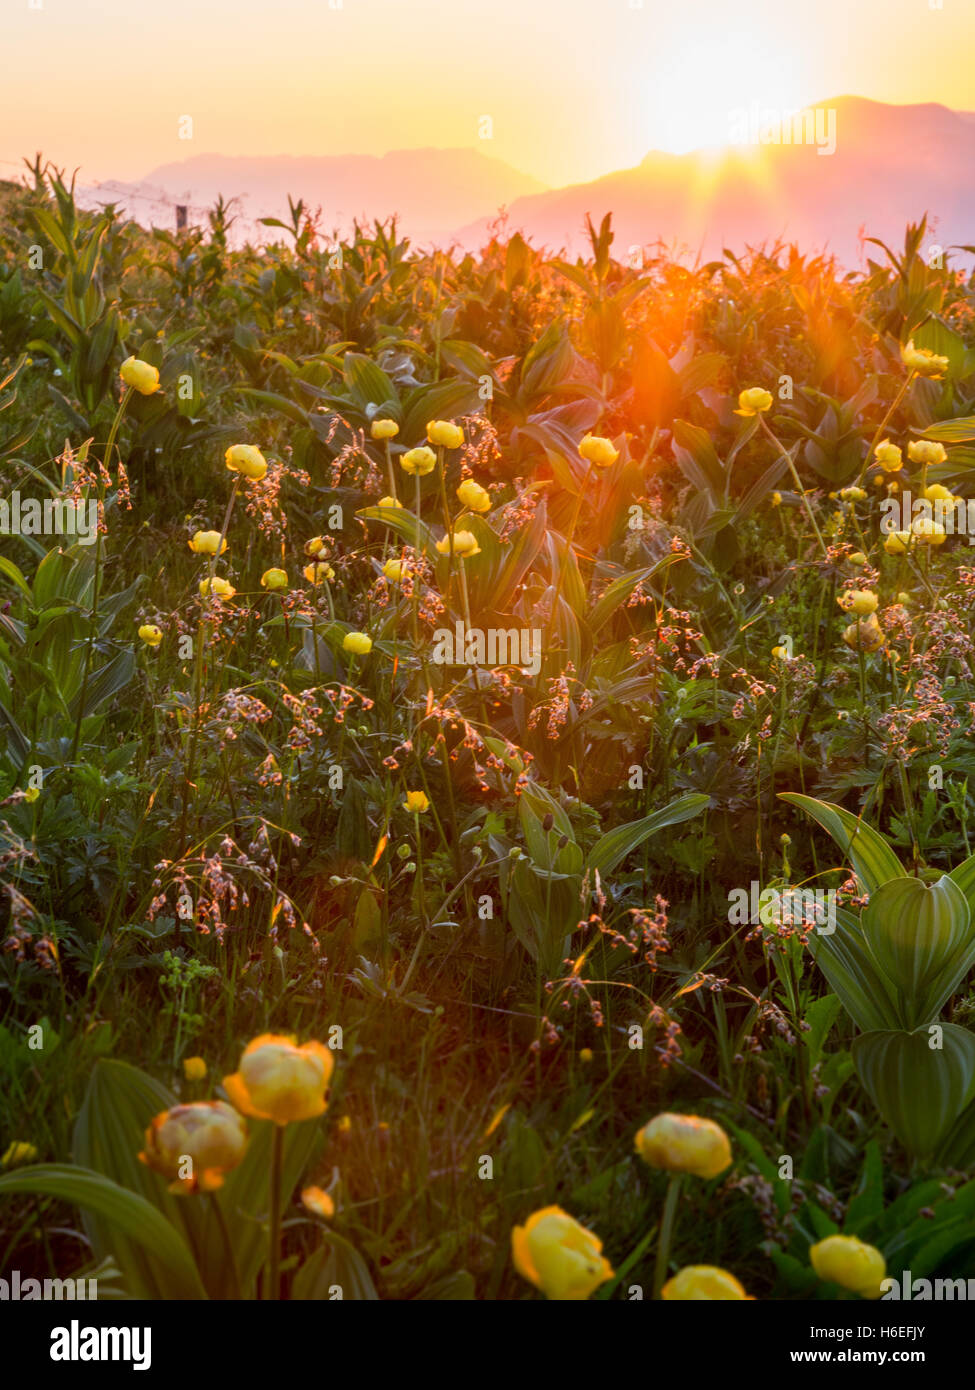 Il sole tramonta dietro le montagne e brilla di una luce calda su fiori gialli in primo piano. Foto Stock